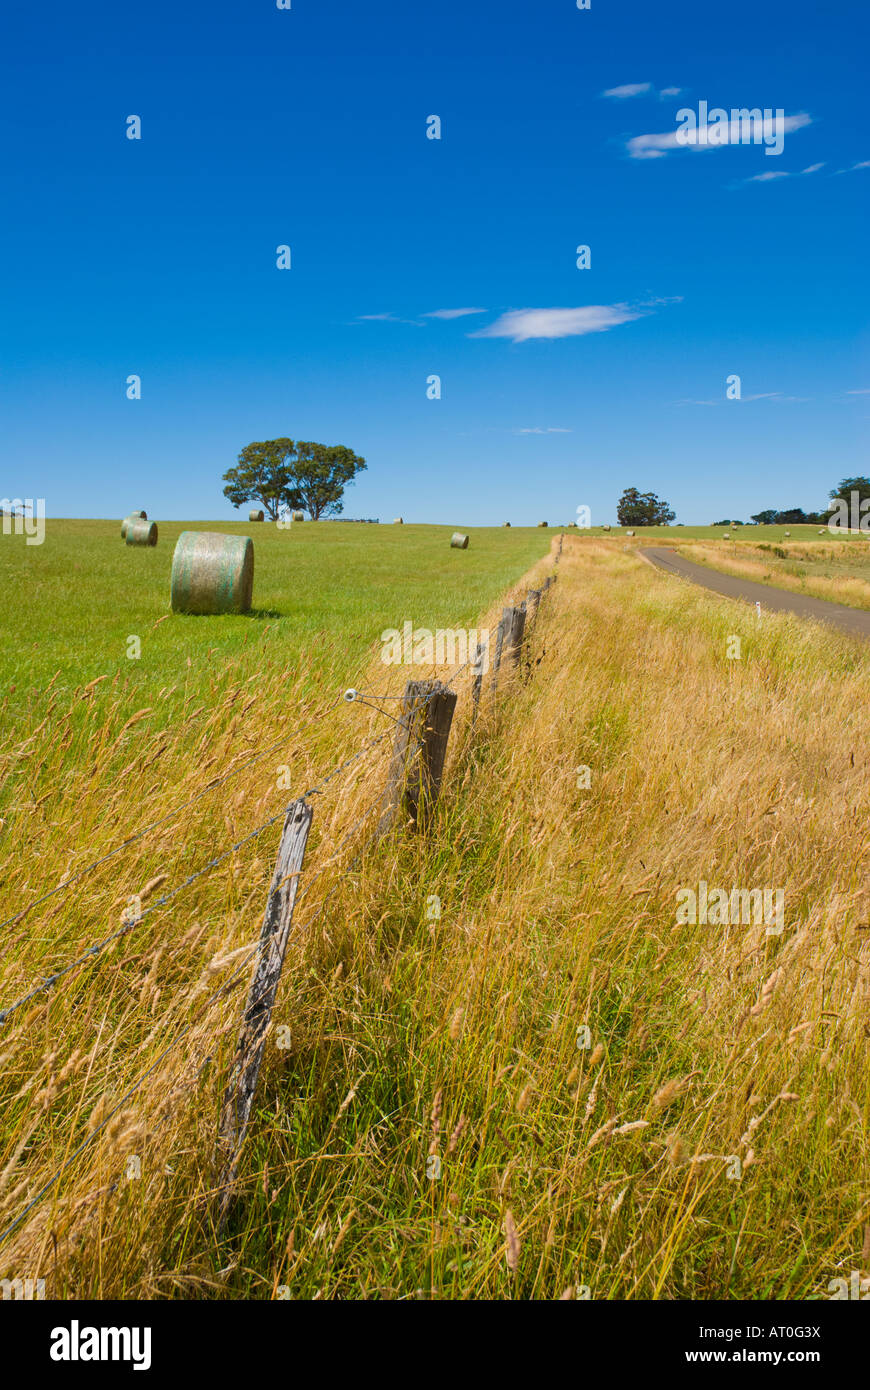 Rural scene Stock Photo